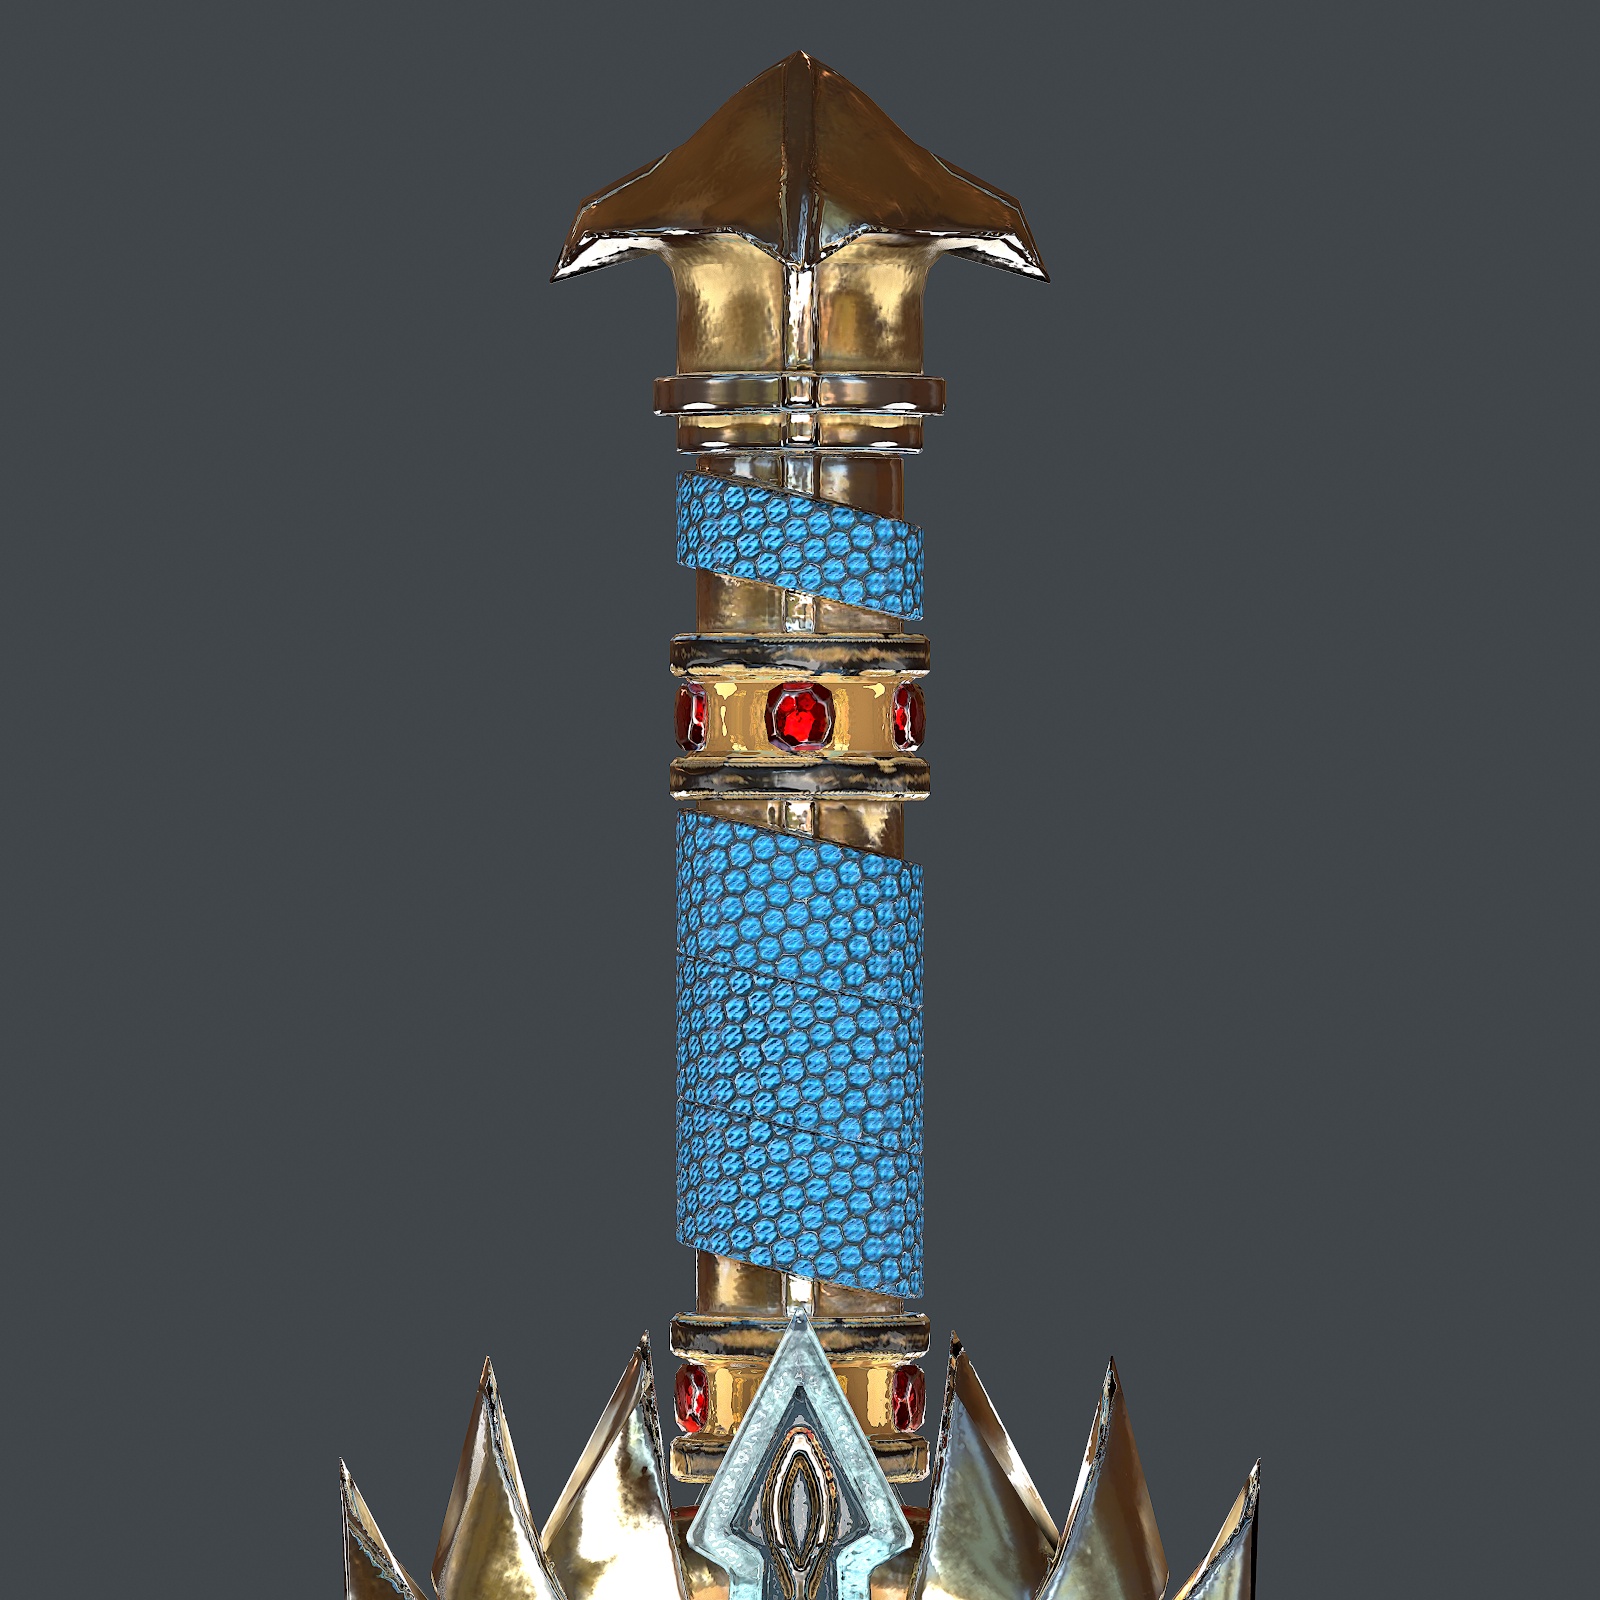 sword made of diamond